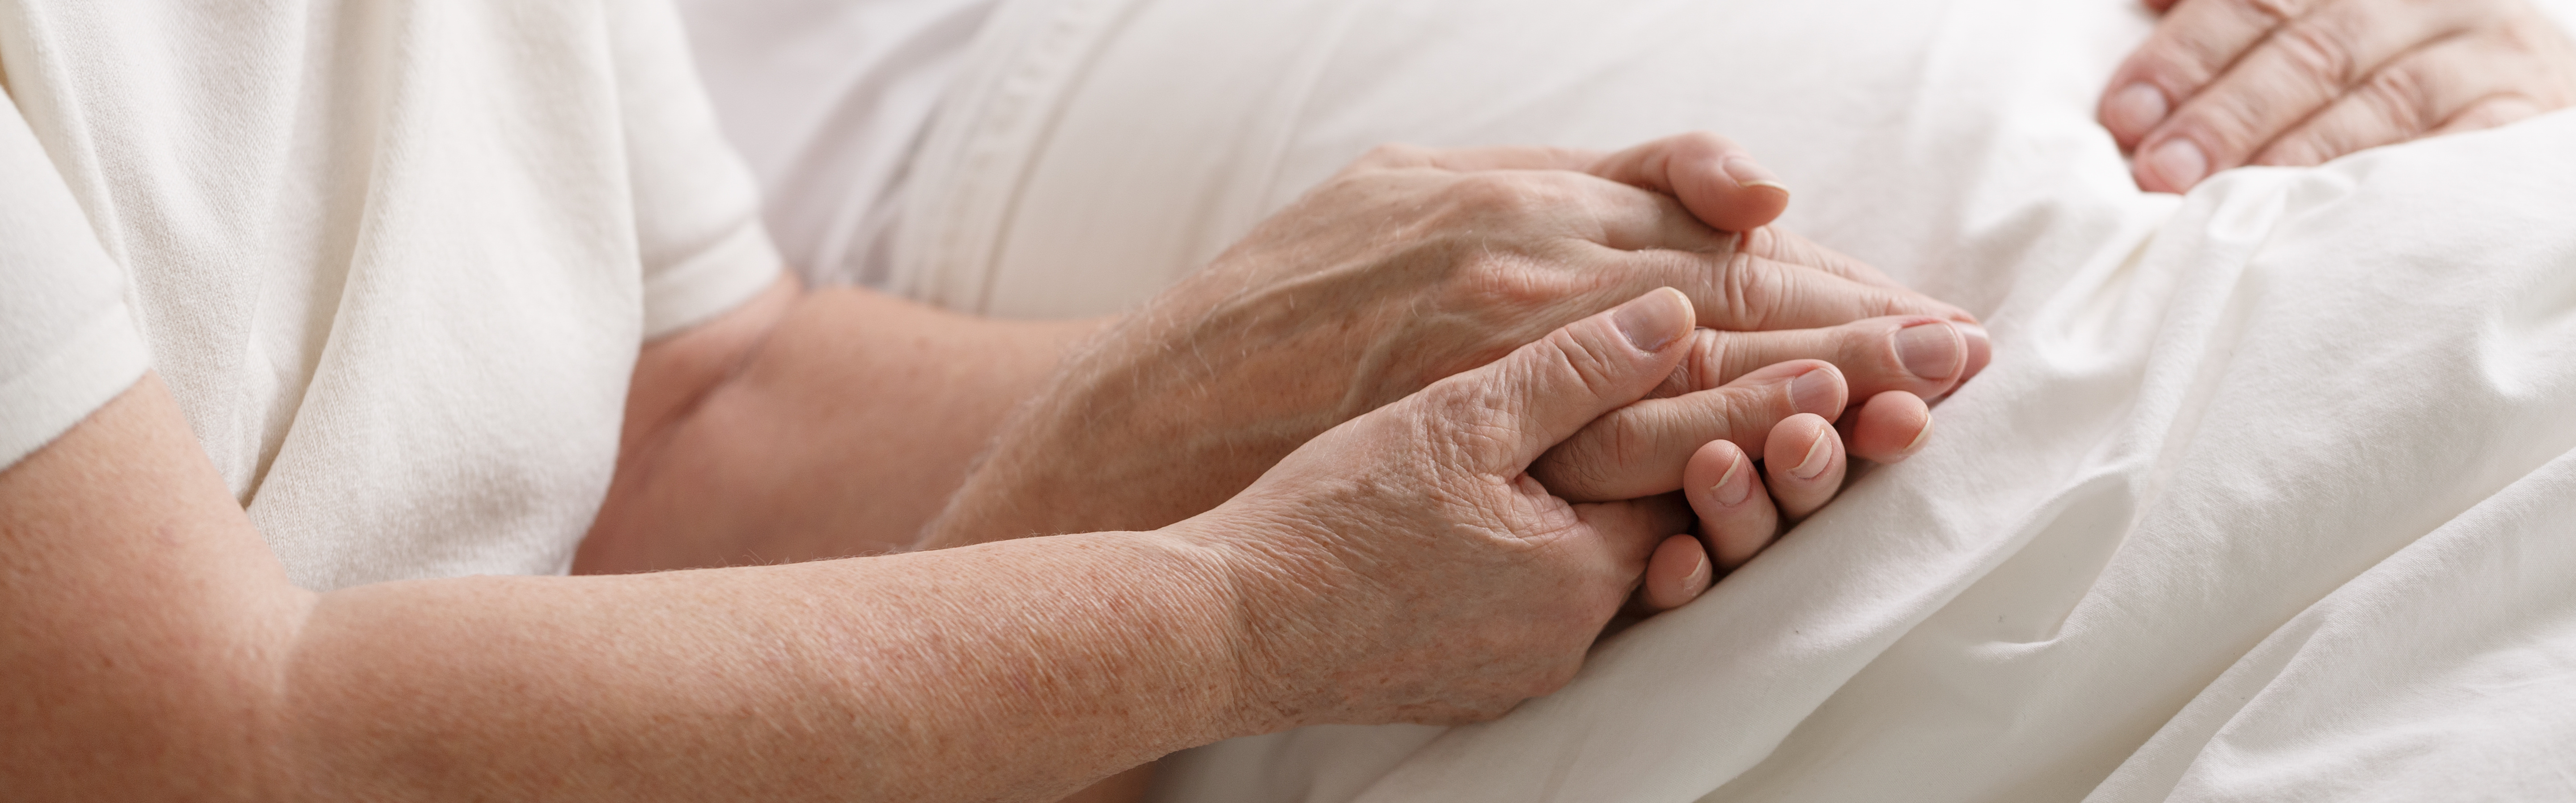 Sedierung als Ultima Ratio in der Palliativmedizin Reduzierung der Symptomlast in der palliativen Situation